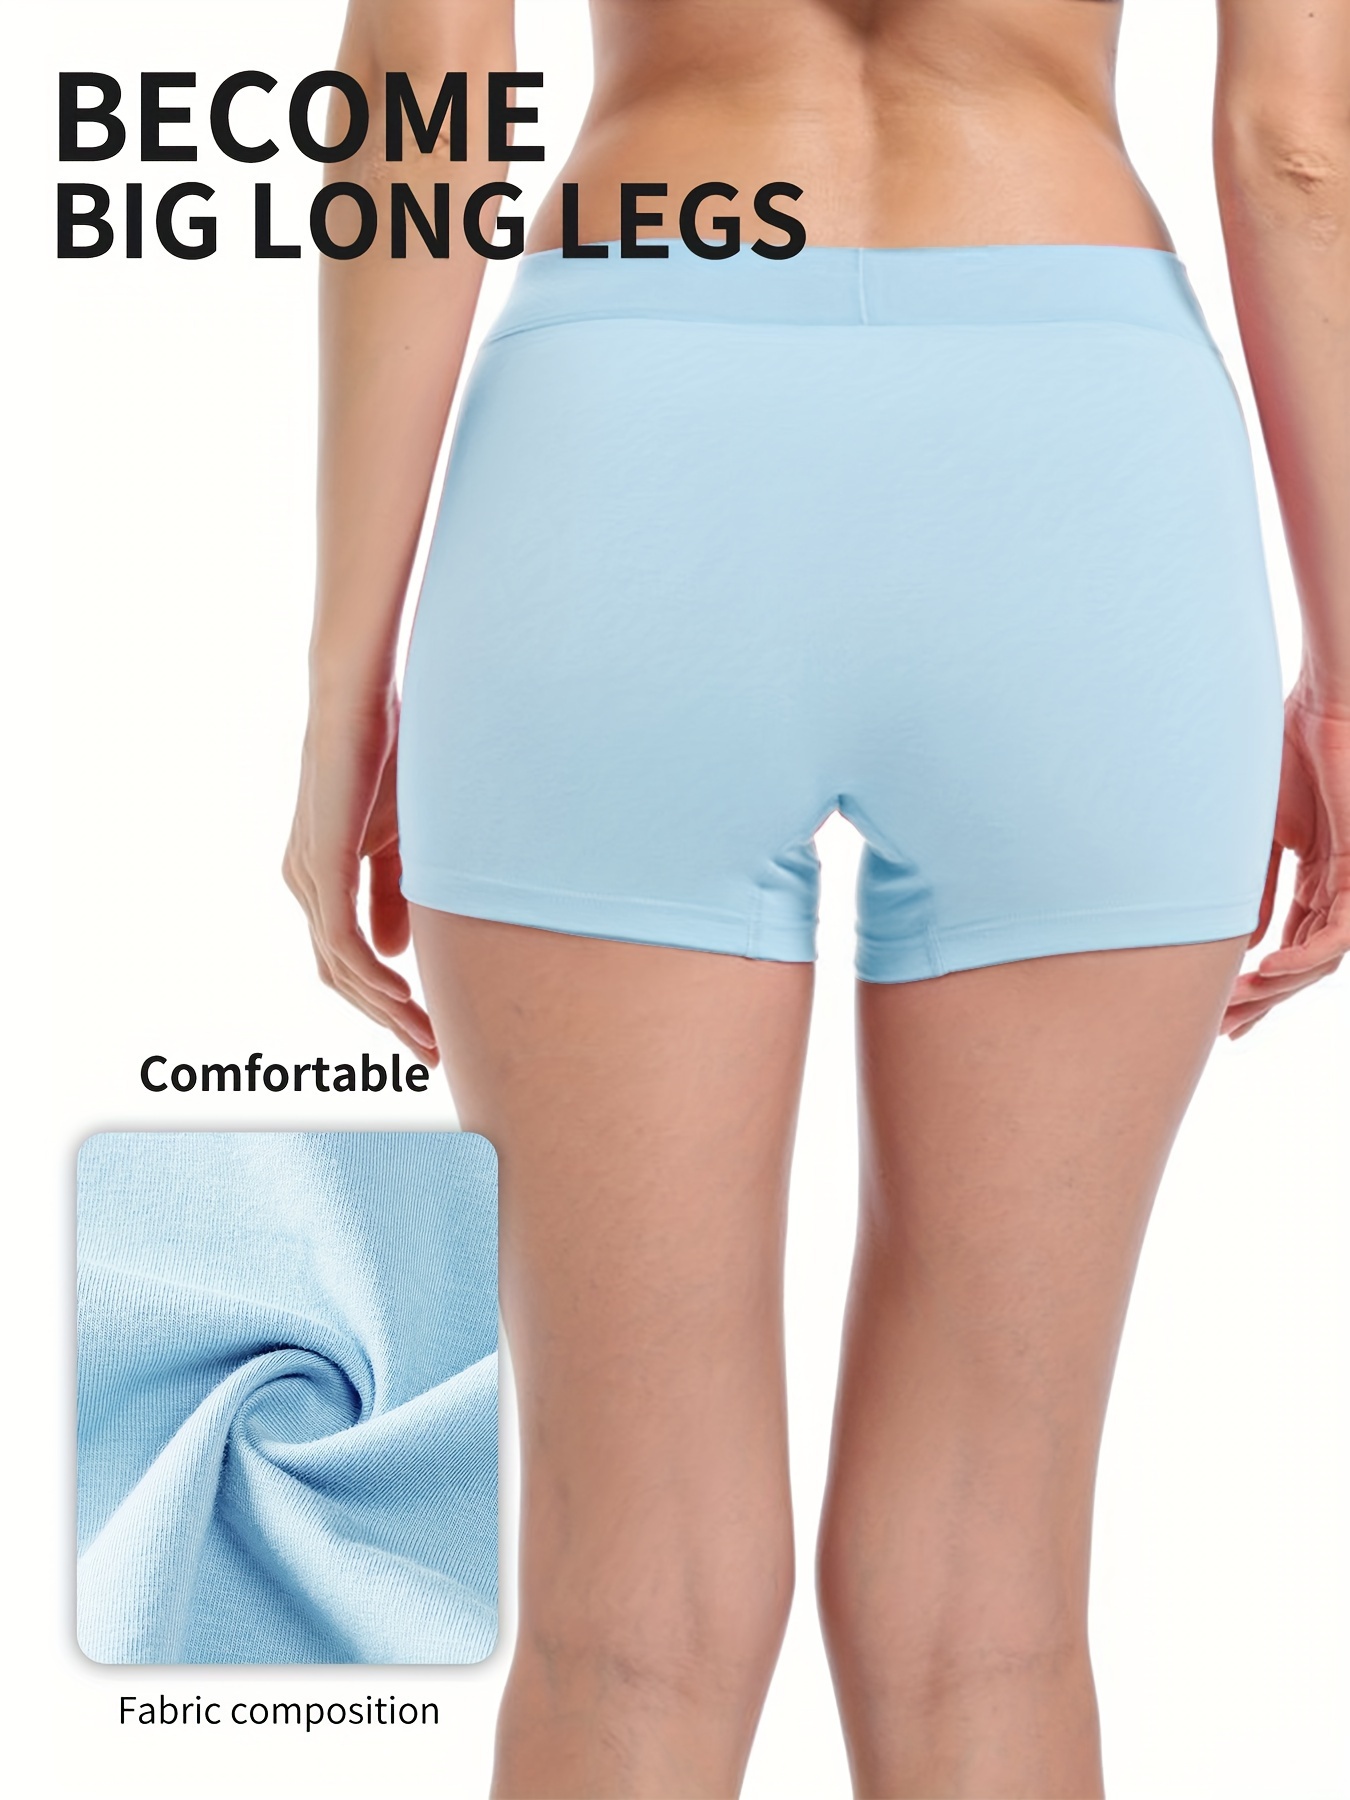 Plus Size Women's Underwear, Long Leg Knickers